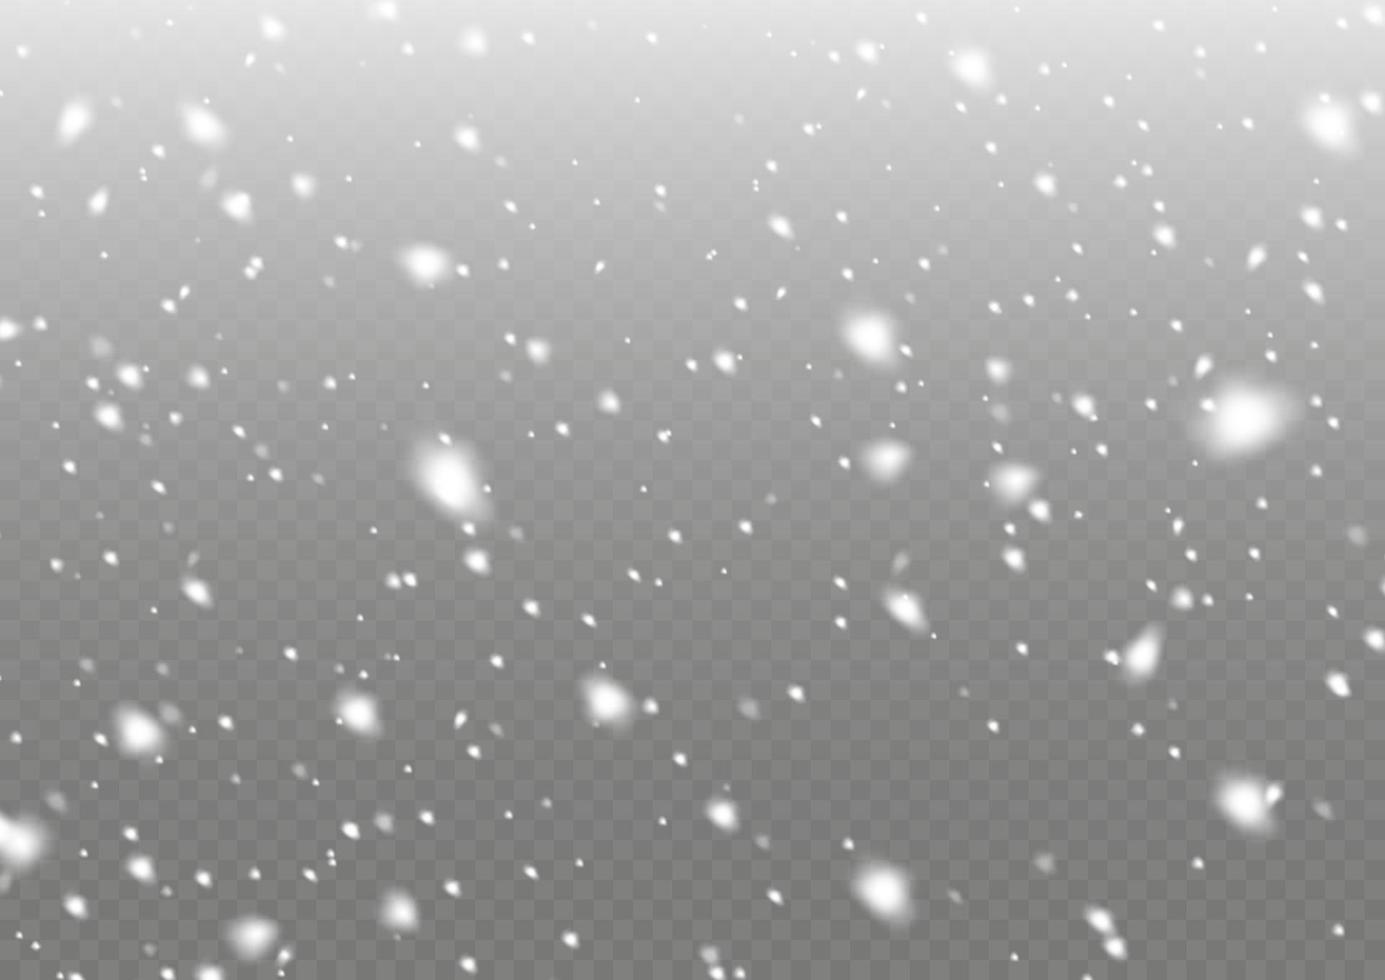 des flocons de neige blancs volent dans les airs. fond de neige.beaucoup d'éléments blancs de flocons froids. neige et vent. vecteur de fortes chutes de neige, flocons de neige sous diverses formes et formes.